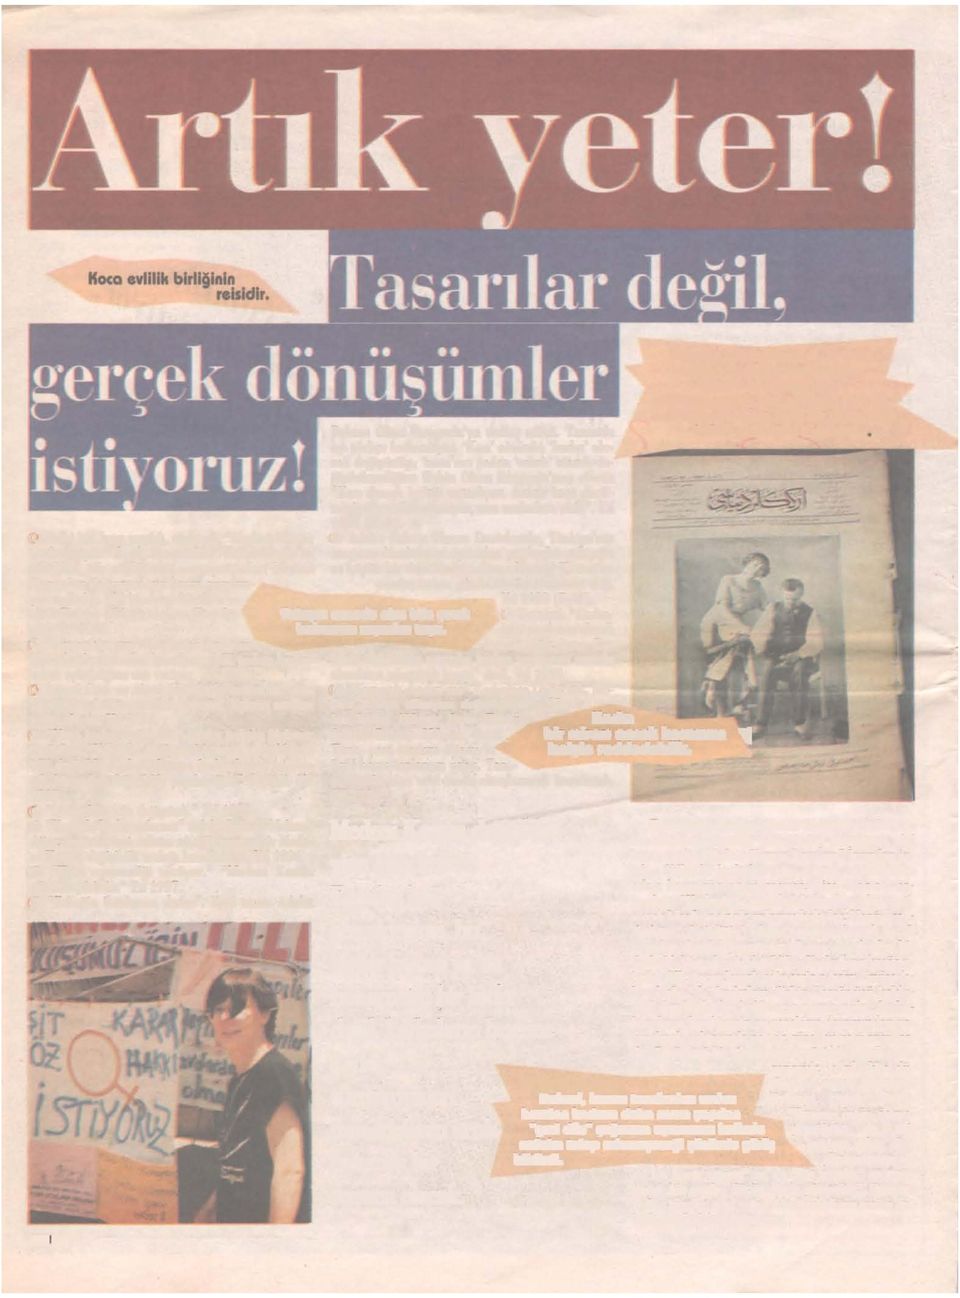 3 "Eşitsizliğe son" Devlet bakanı Türkân Akyol tarafından hazırlanan MK taslağı kadınerkek eşitsizliğine son veriyor. Yıl 1993.